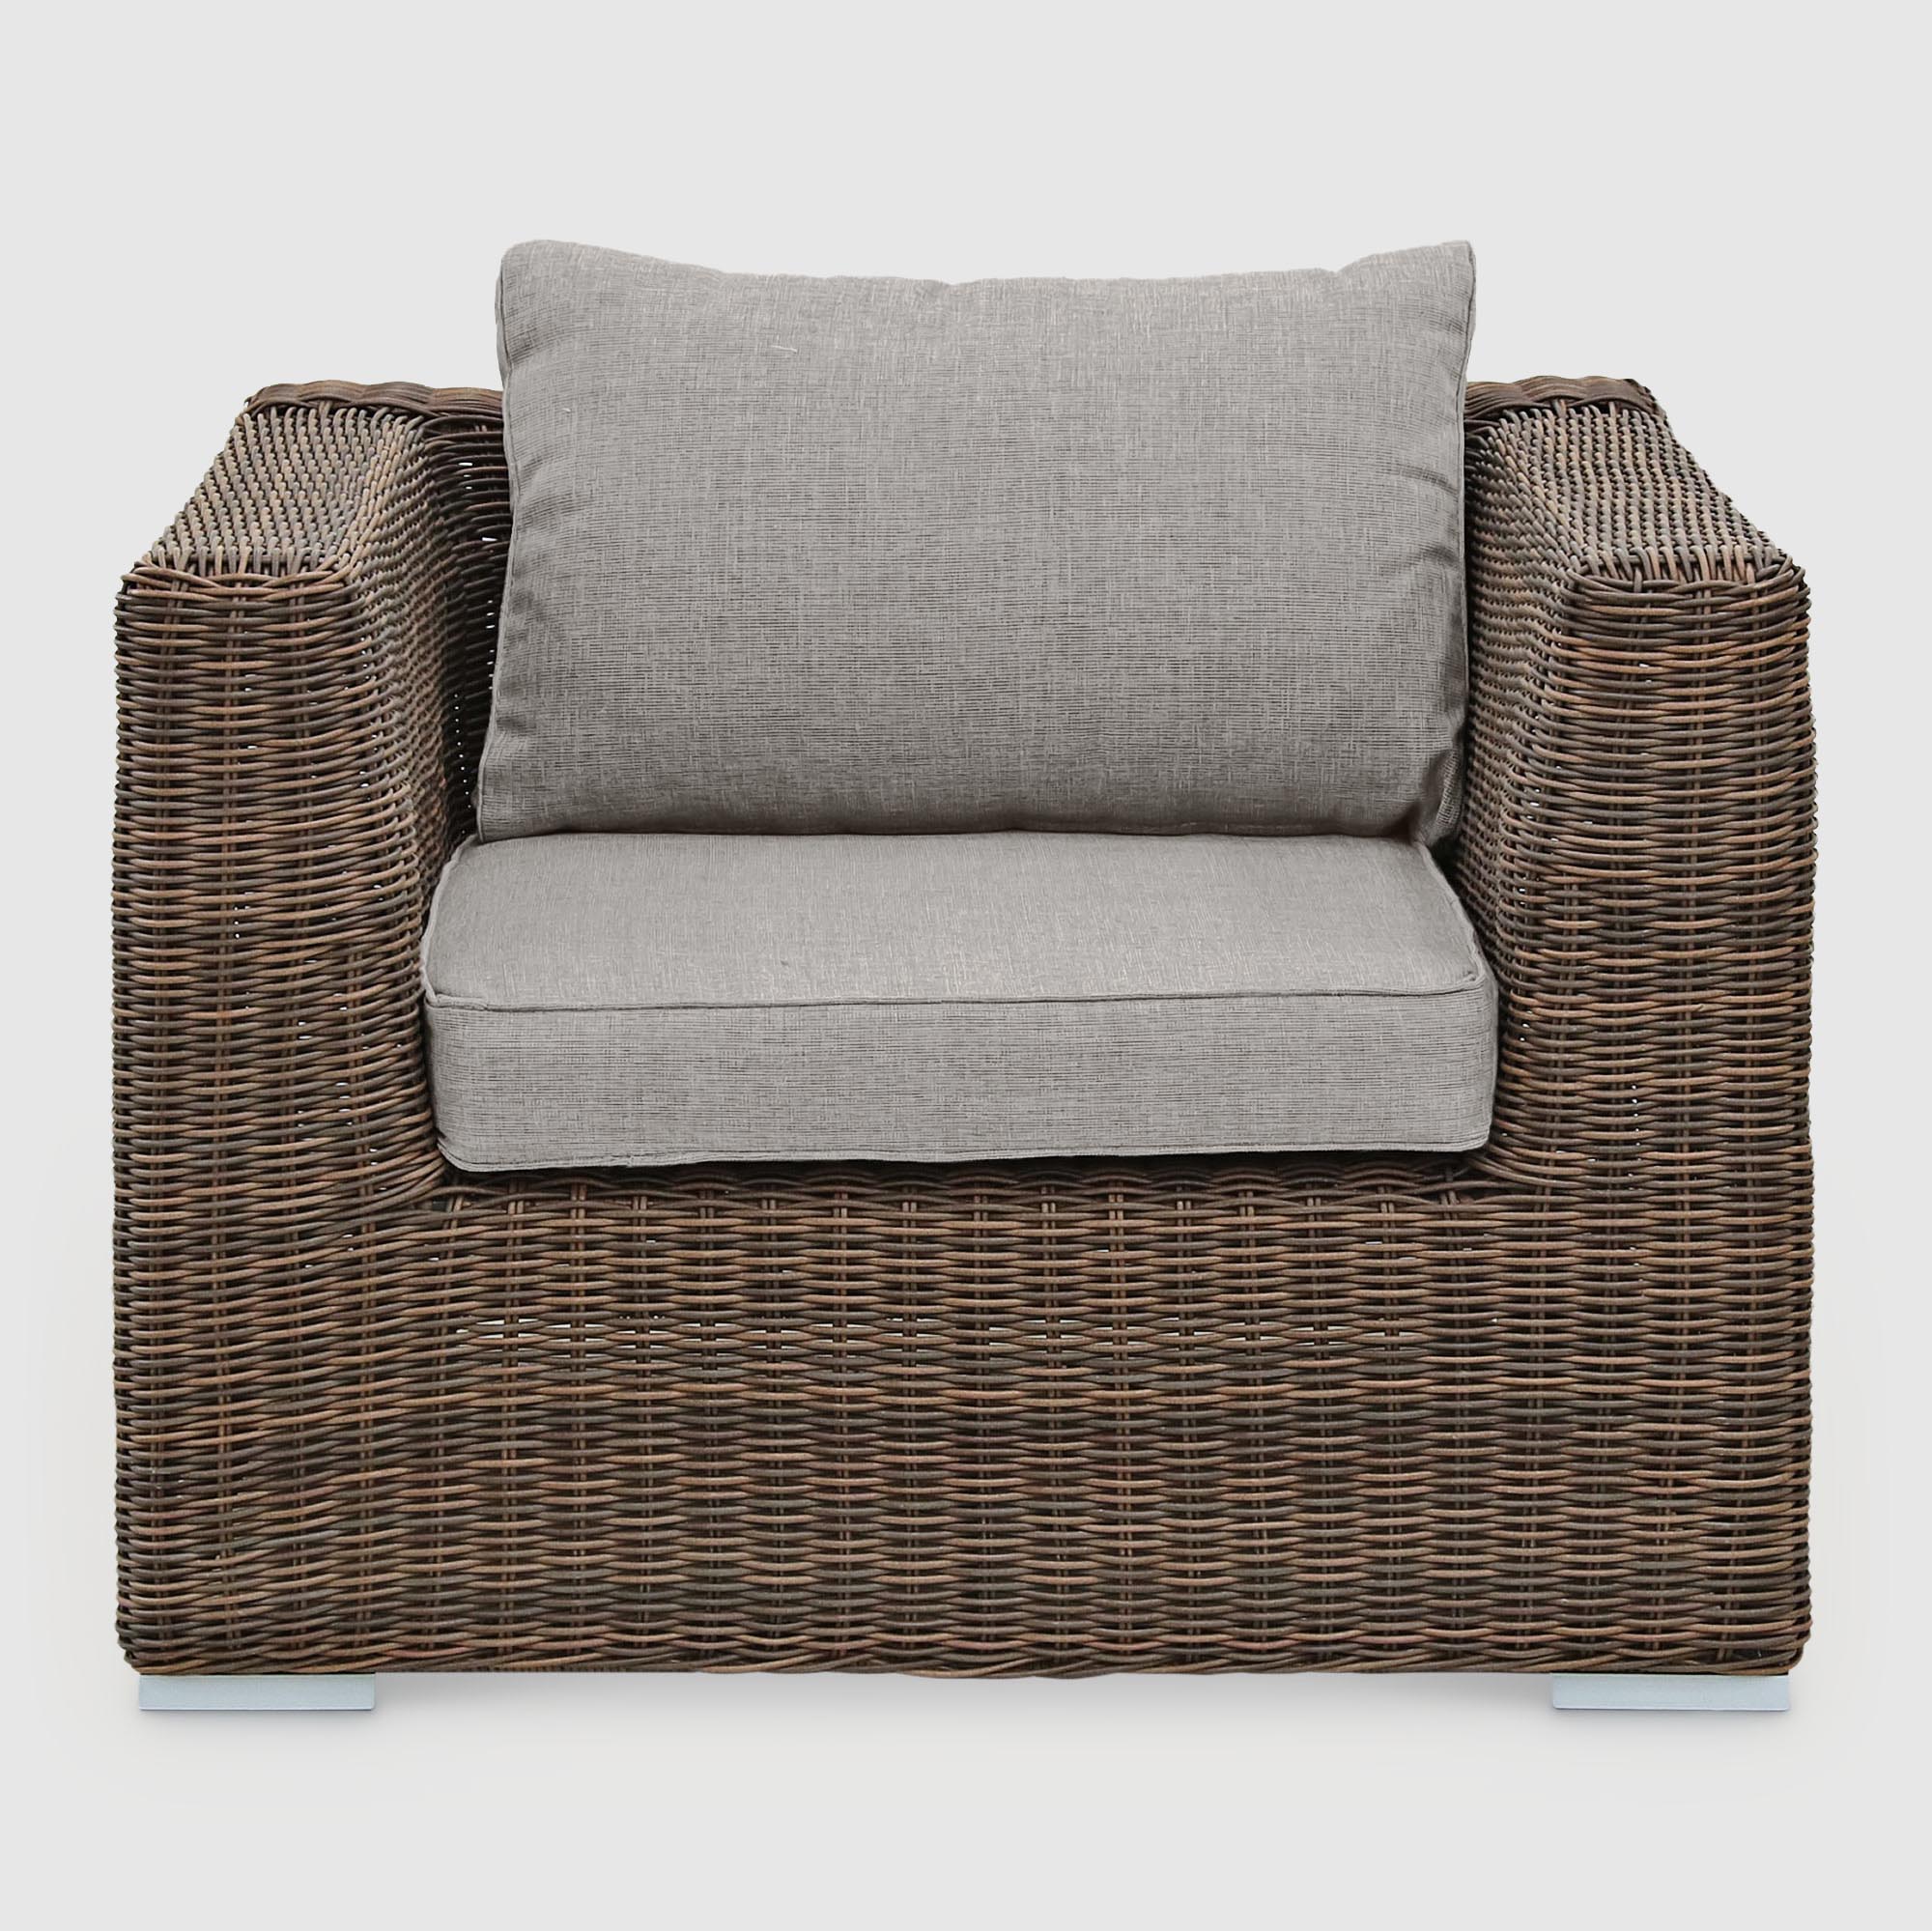 Комплект мебели Yuhang коричневый с серым 4 предмета, цвет бежевый, размер 205х98х80 - фото 6